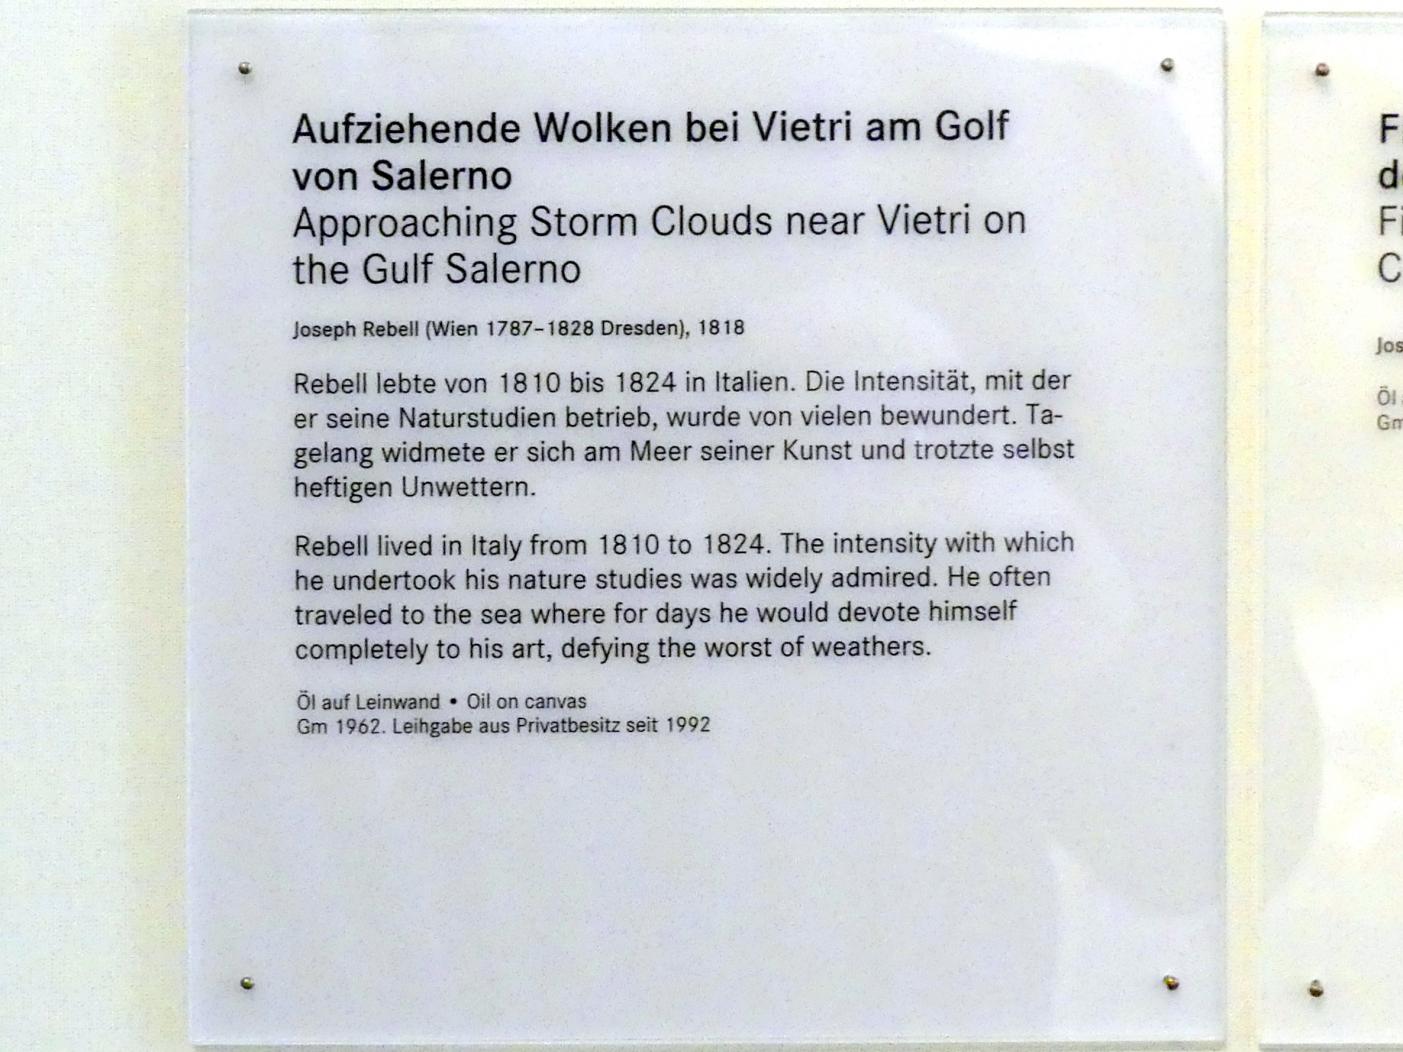 Josef Rebell (1813–1828), Aufziehende Wolken bei Vietri am Golf von Salerno, Nürnberg, Germanisches Nationalmuseum, 19. Jahrhundert - 5, 1818, Bild 2/2